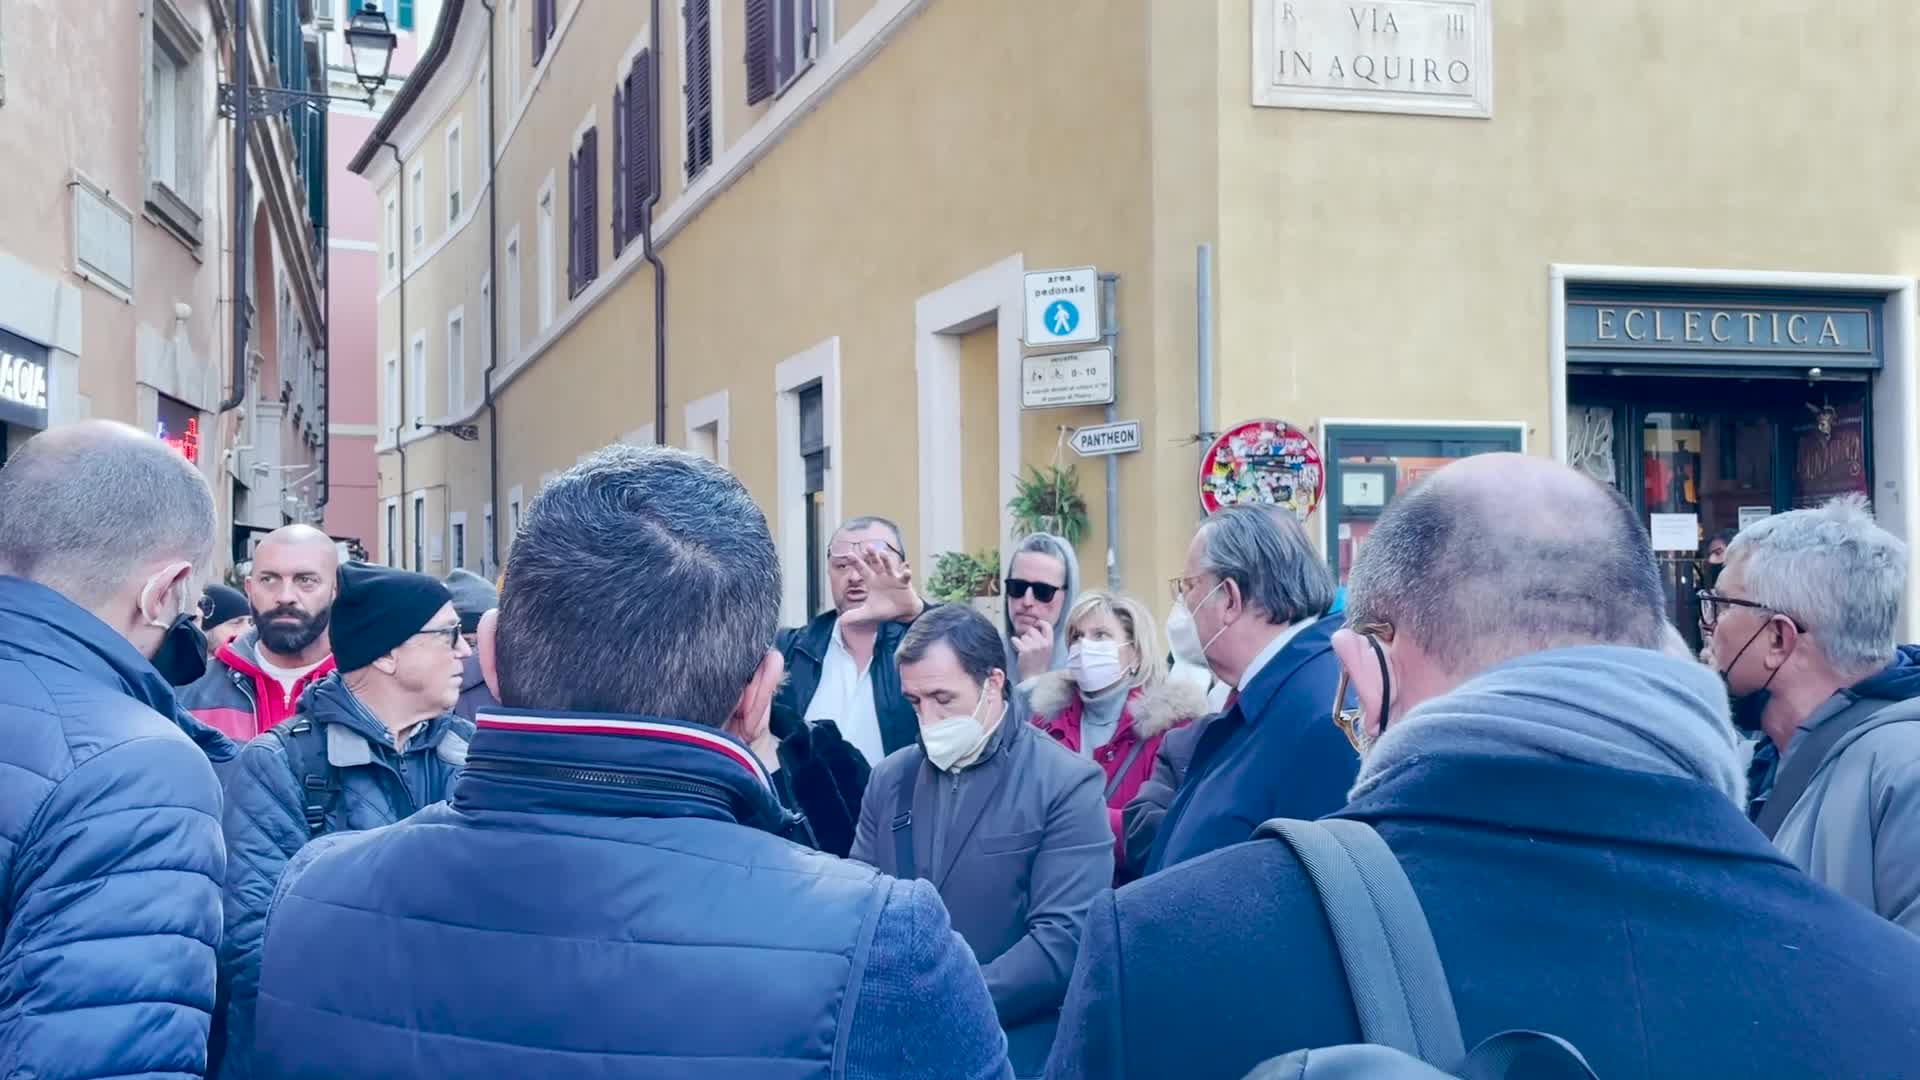 Balneari in protesta a Montecitorio: "Noi traditi dalla politica"